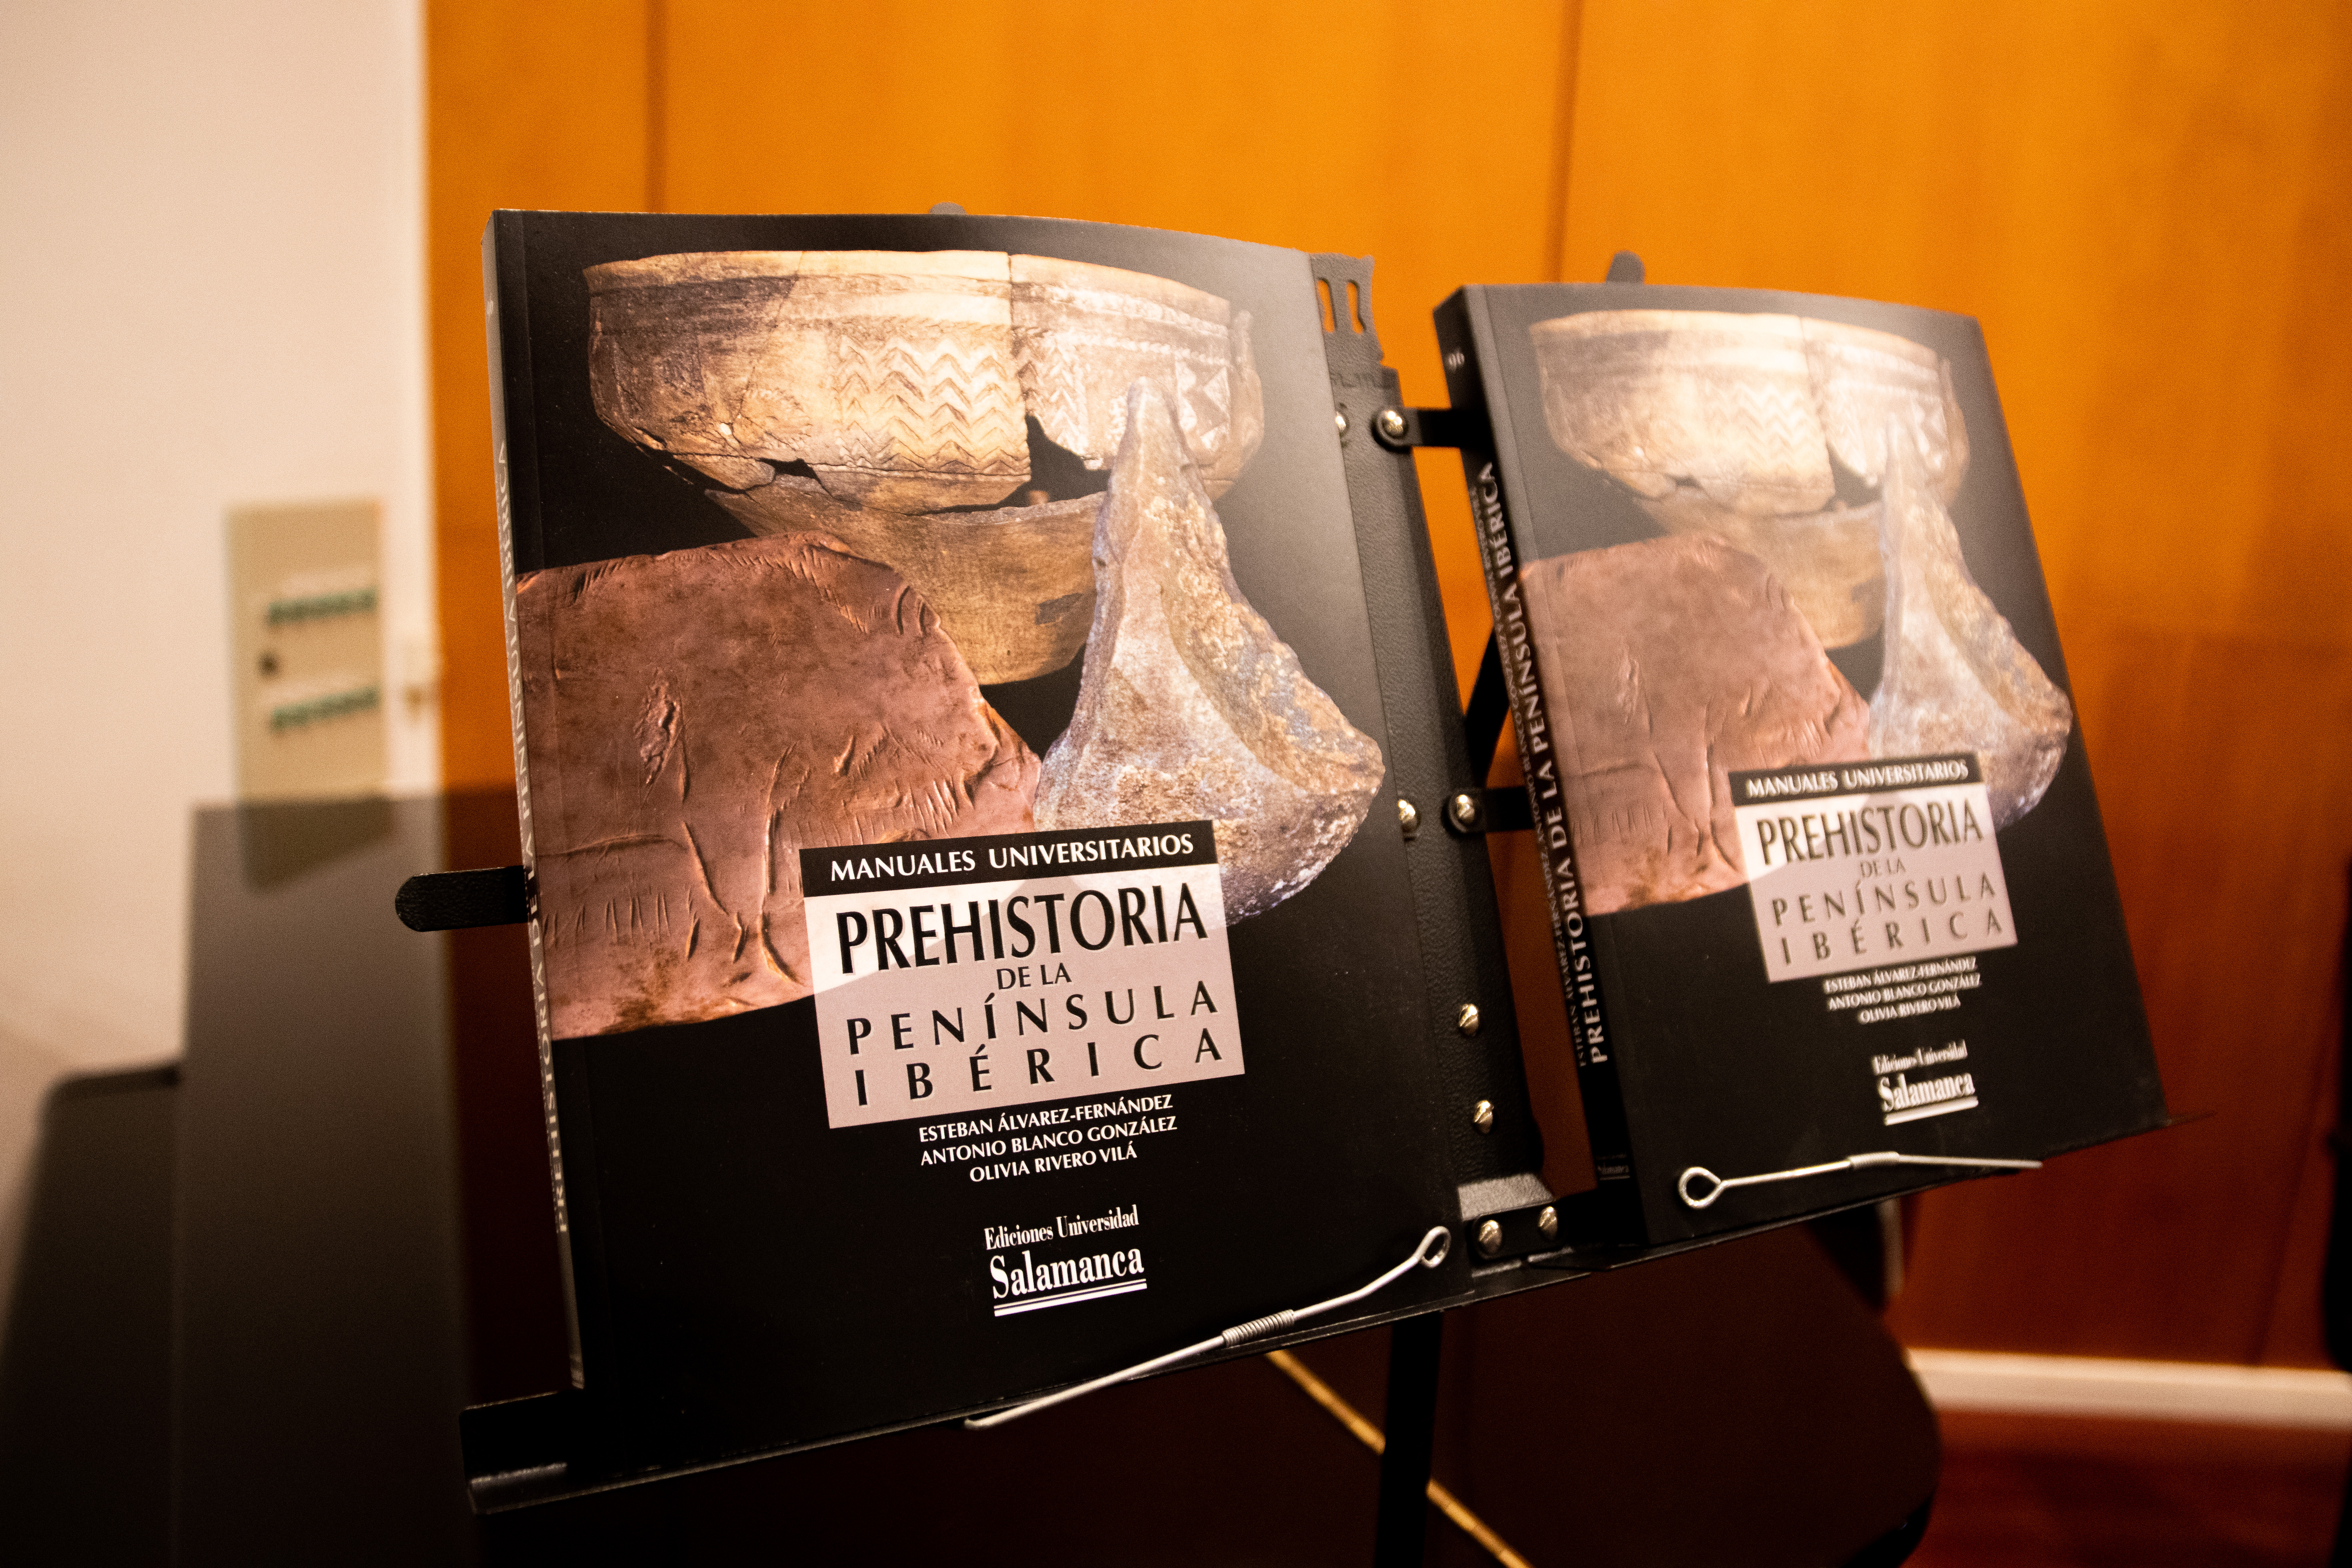 Manual universitario "Prehistoria de la península ibérica"